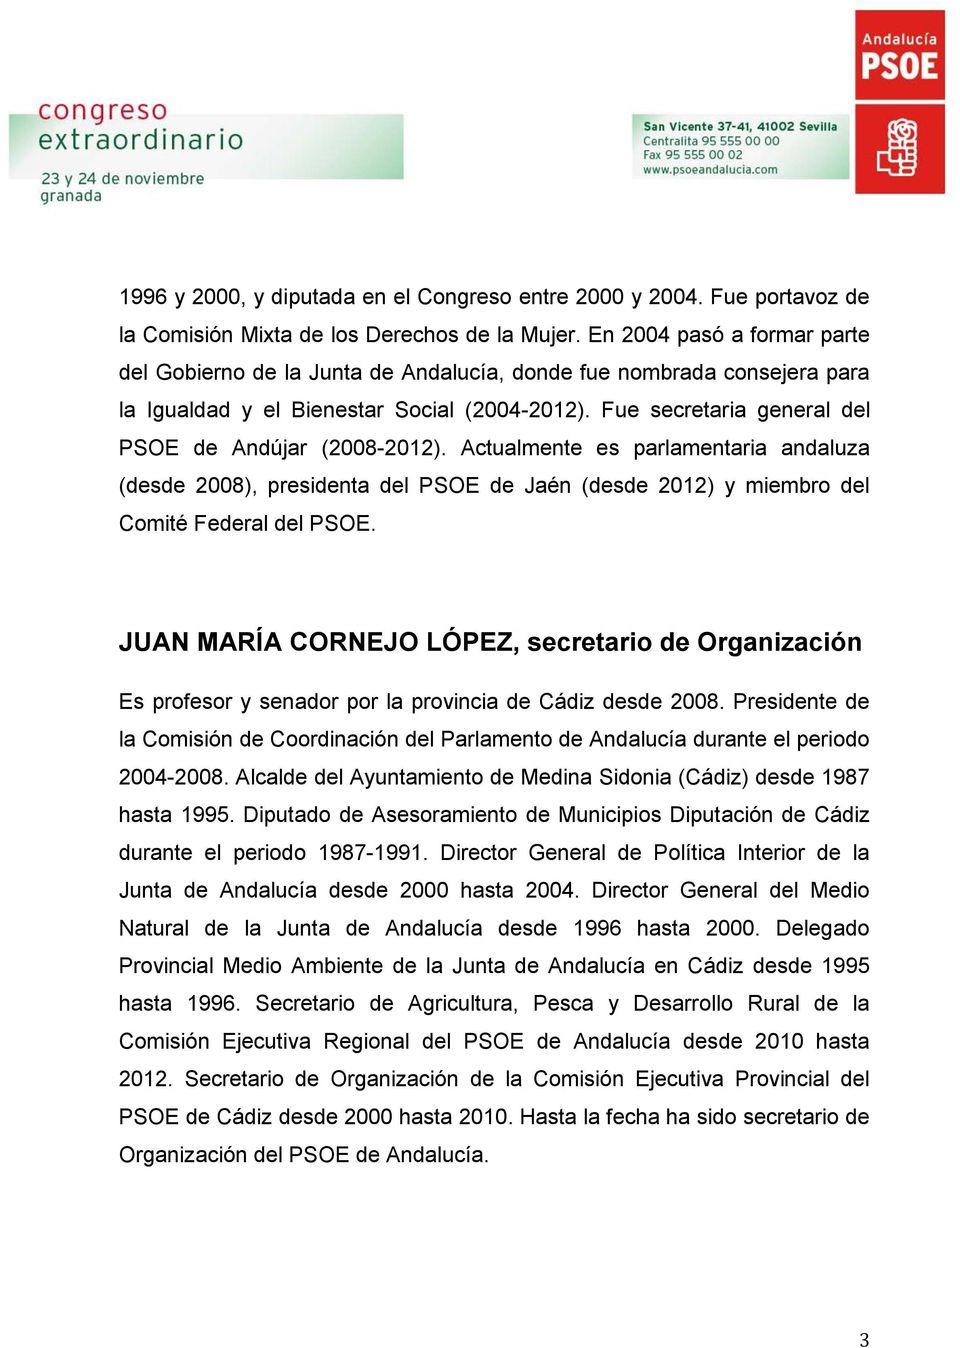 Fue secretaria general del PSOE de Andújar (2008-2012). Actualmente es parlamentaria andaluza (desde 2008), presidenta del PSOE de Jaén (desde 2012) y miembro del Comité Federal del PSOE.